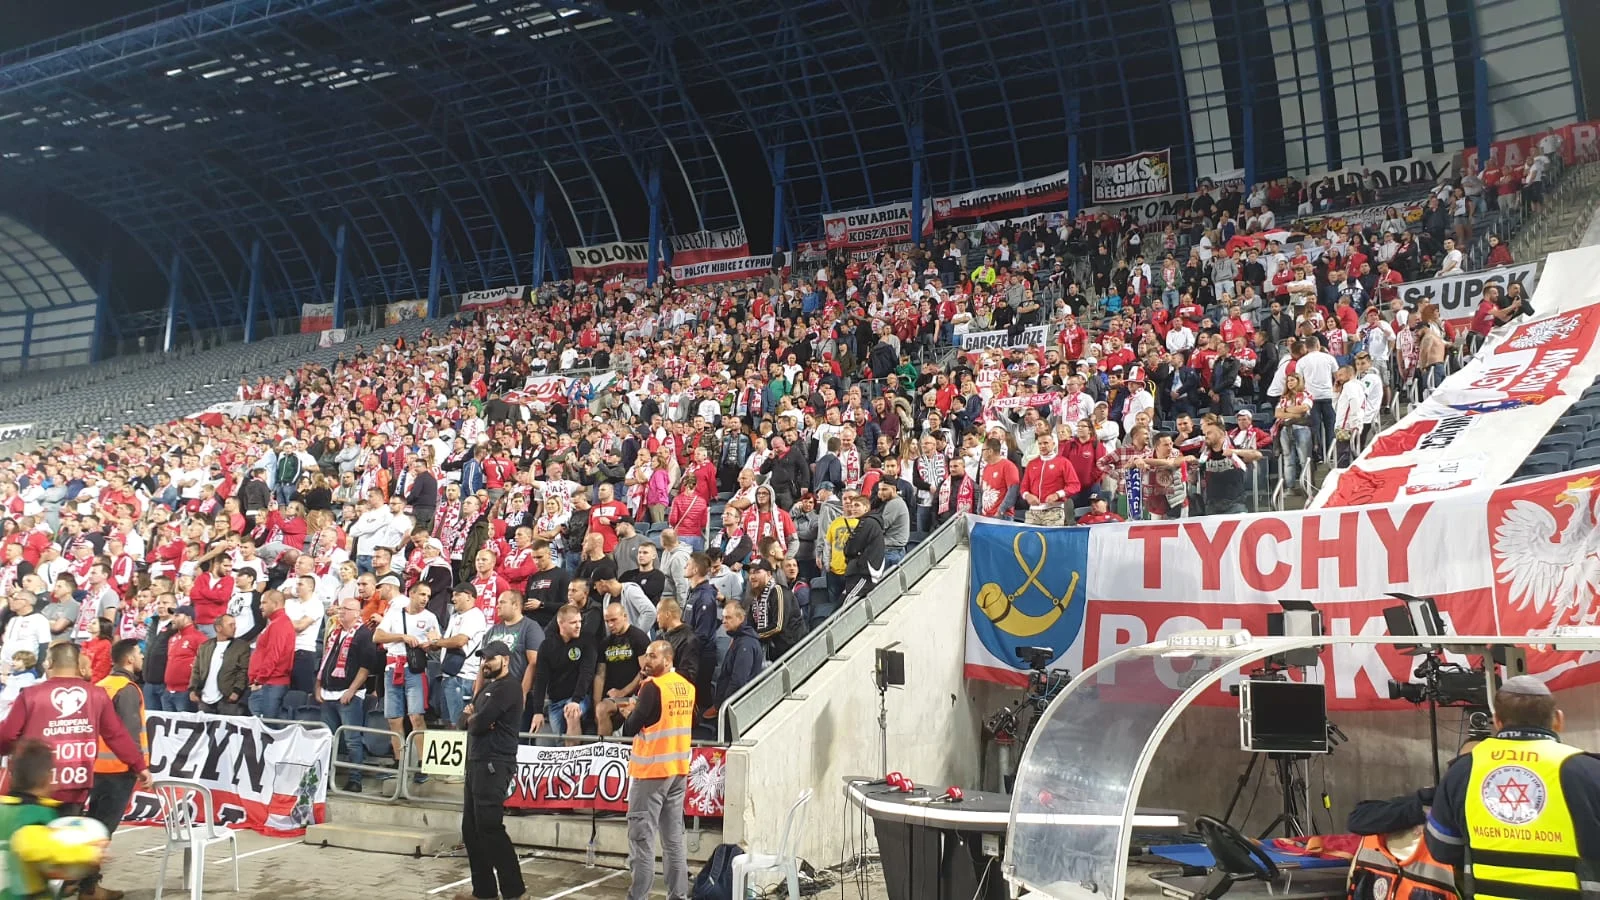 הקהל הפולני שהגיע לצפות בנבחרתו באצטדיון טדי